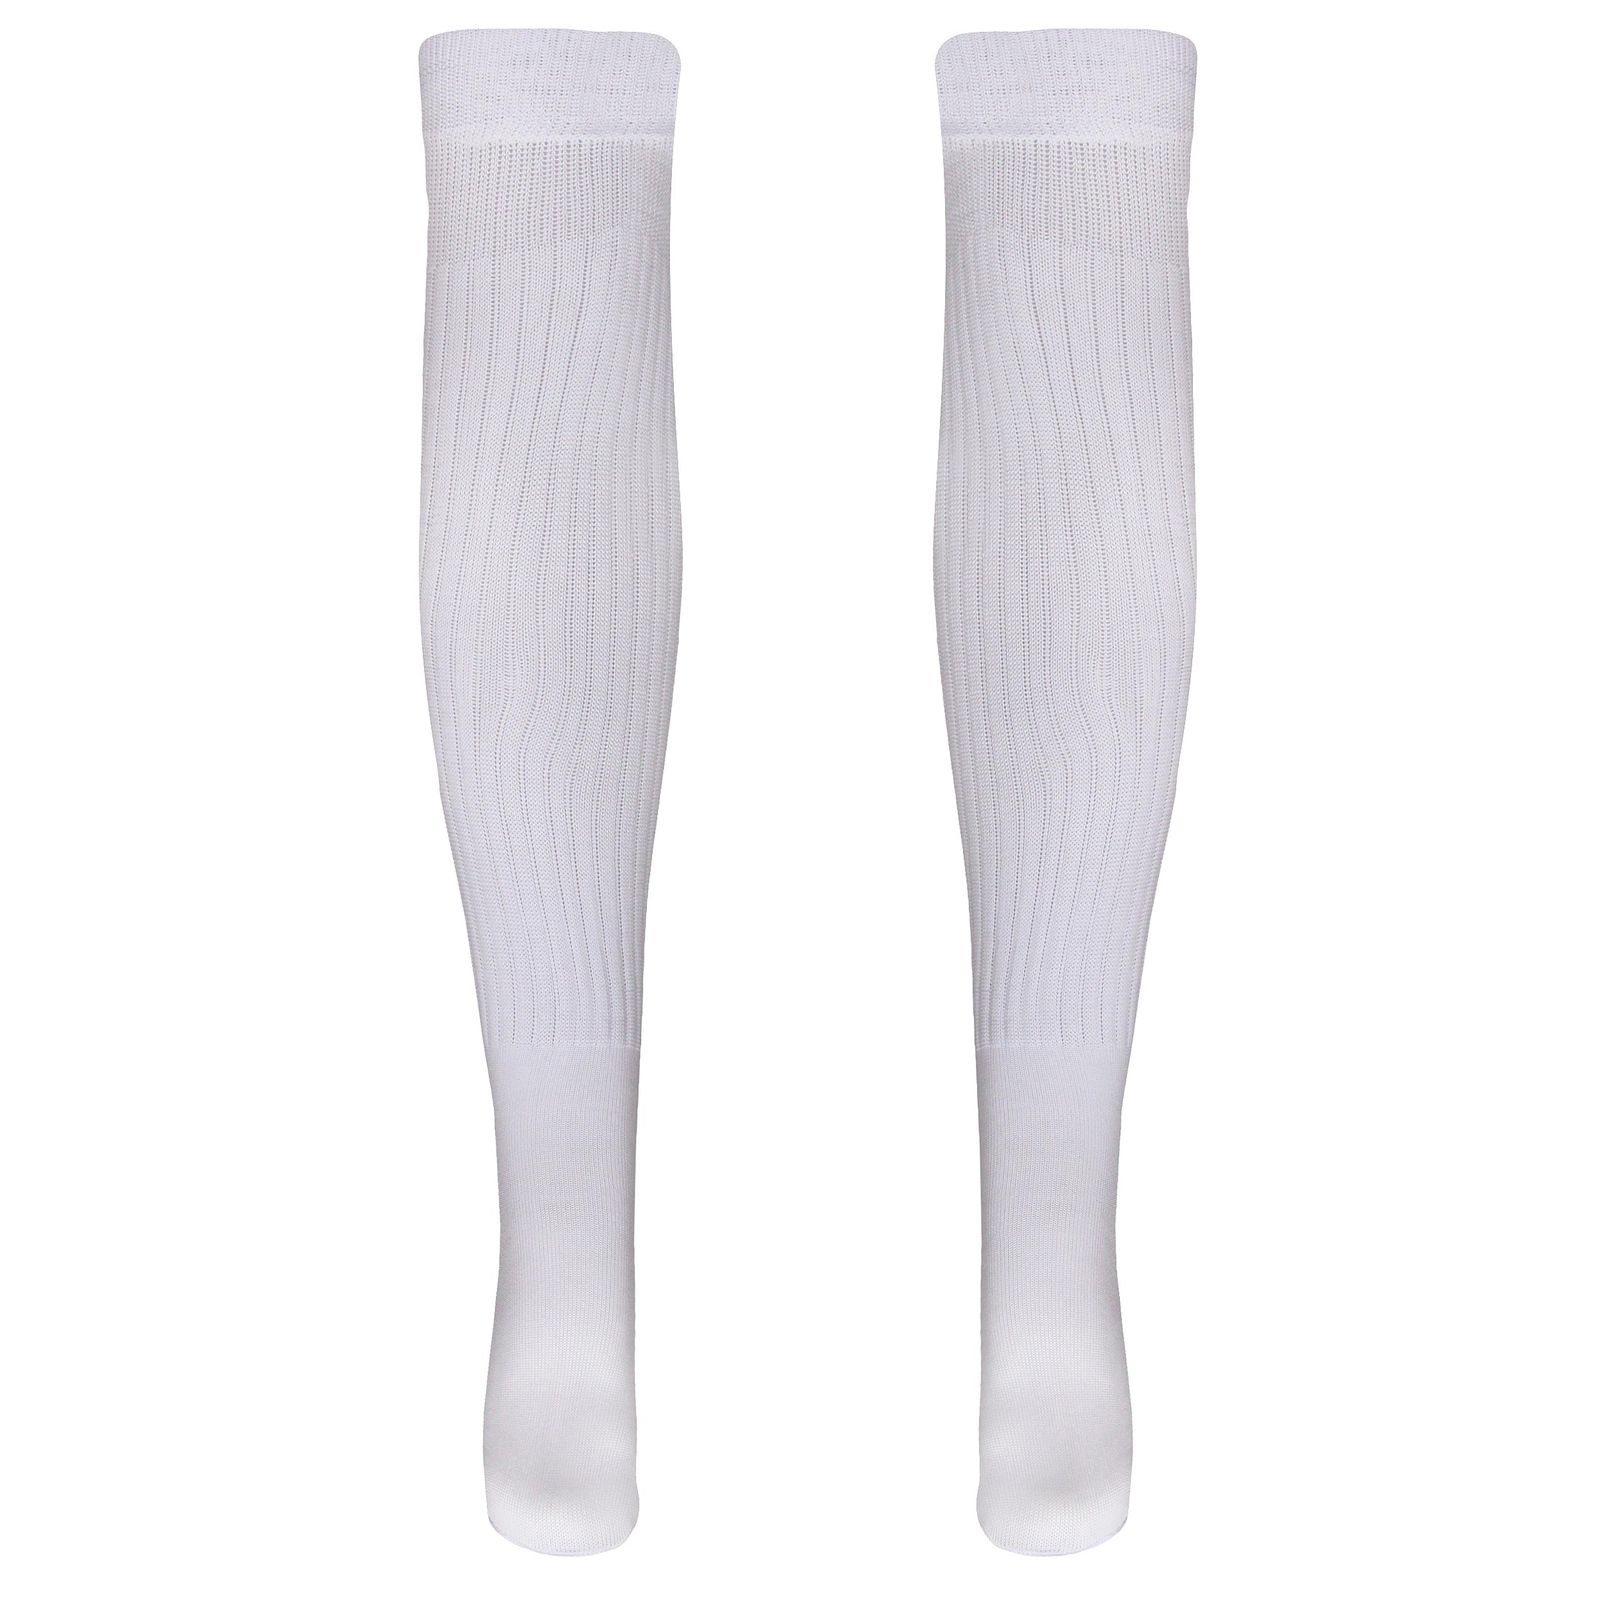 جوراب ورزشی ساق بلند مردانه ماییلدا مدل 4185 رنگ سفید -  - 1